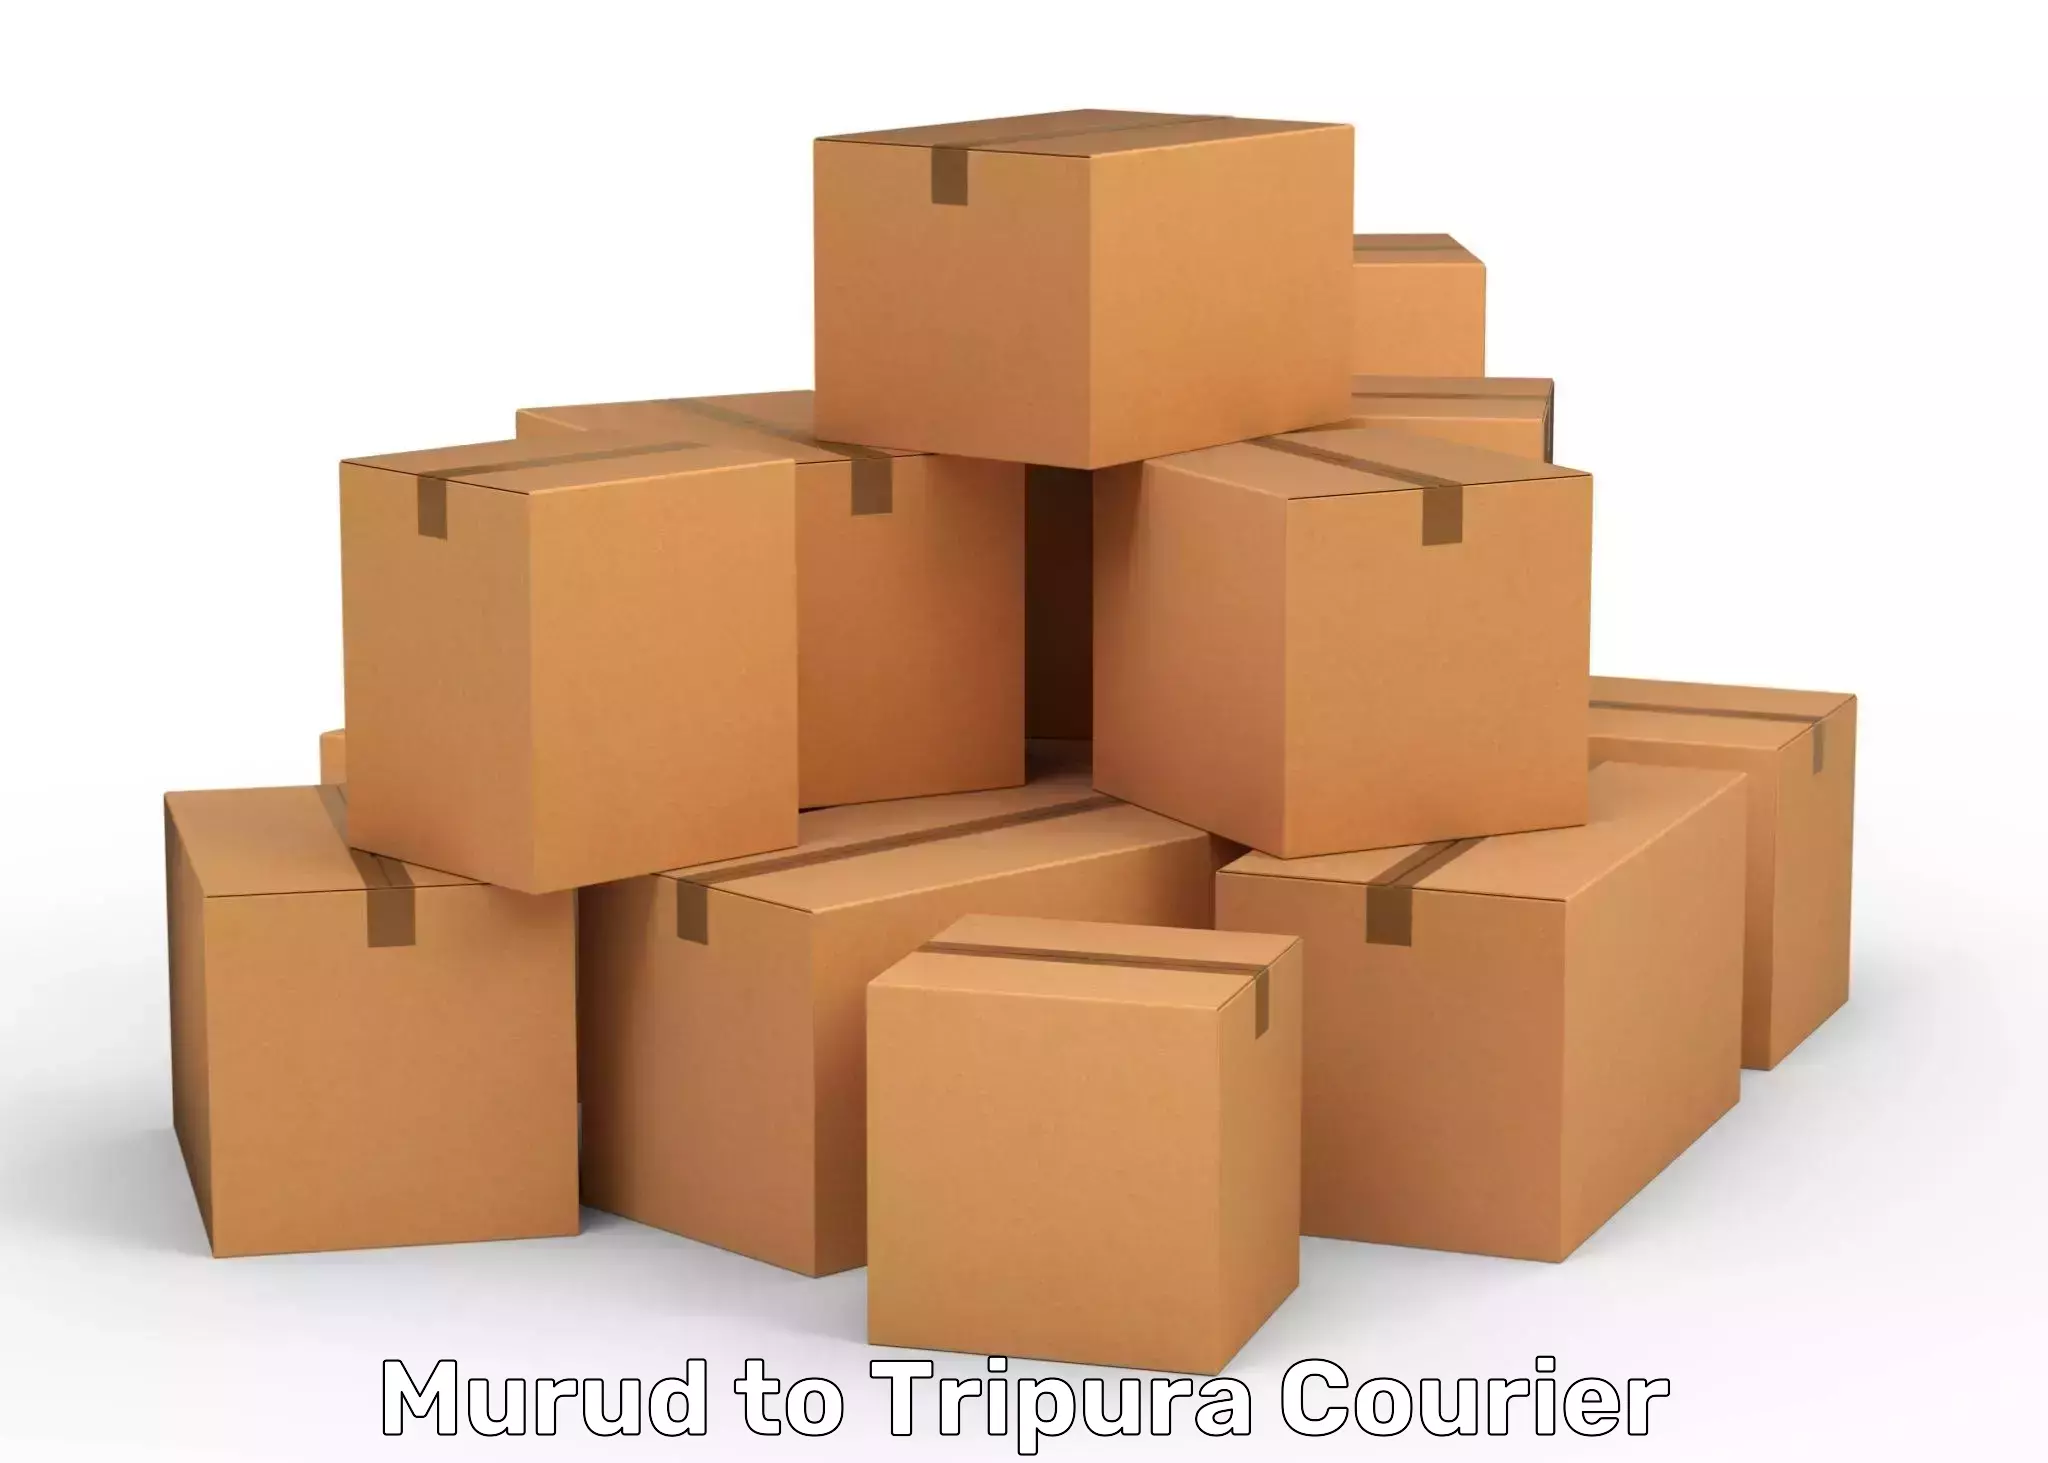 Quick parcel dispatch Murud to Amarpur